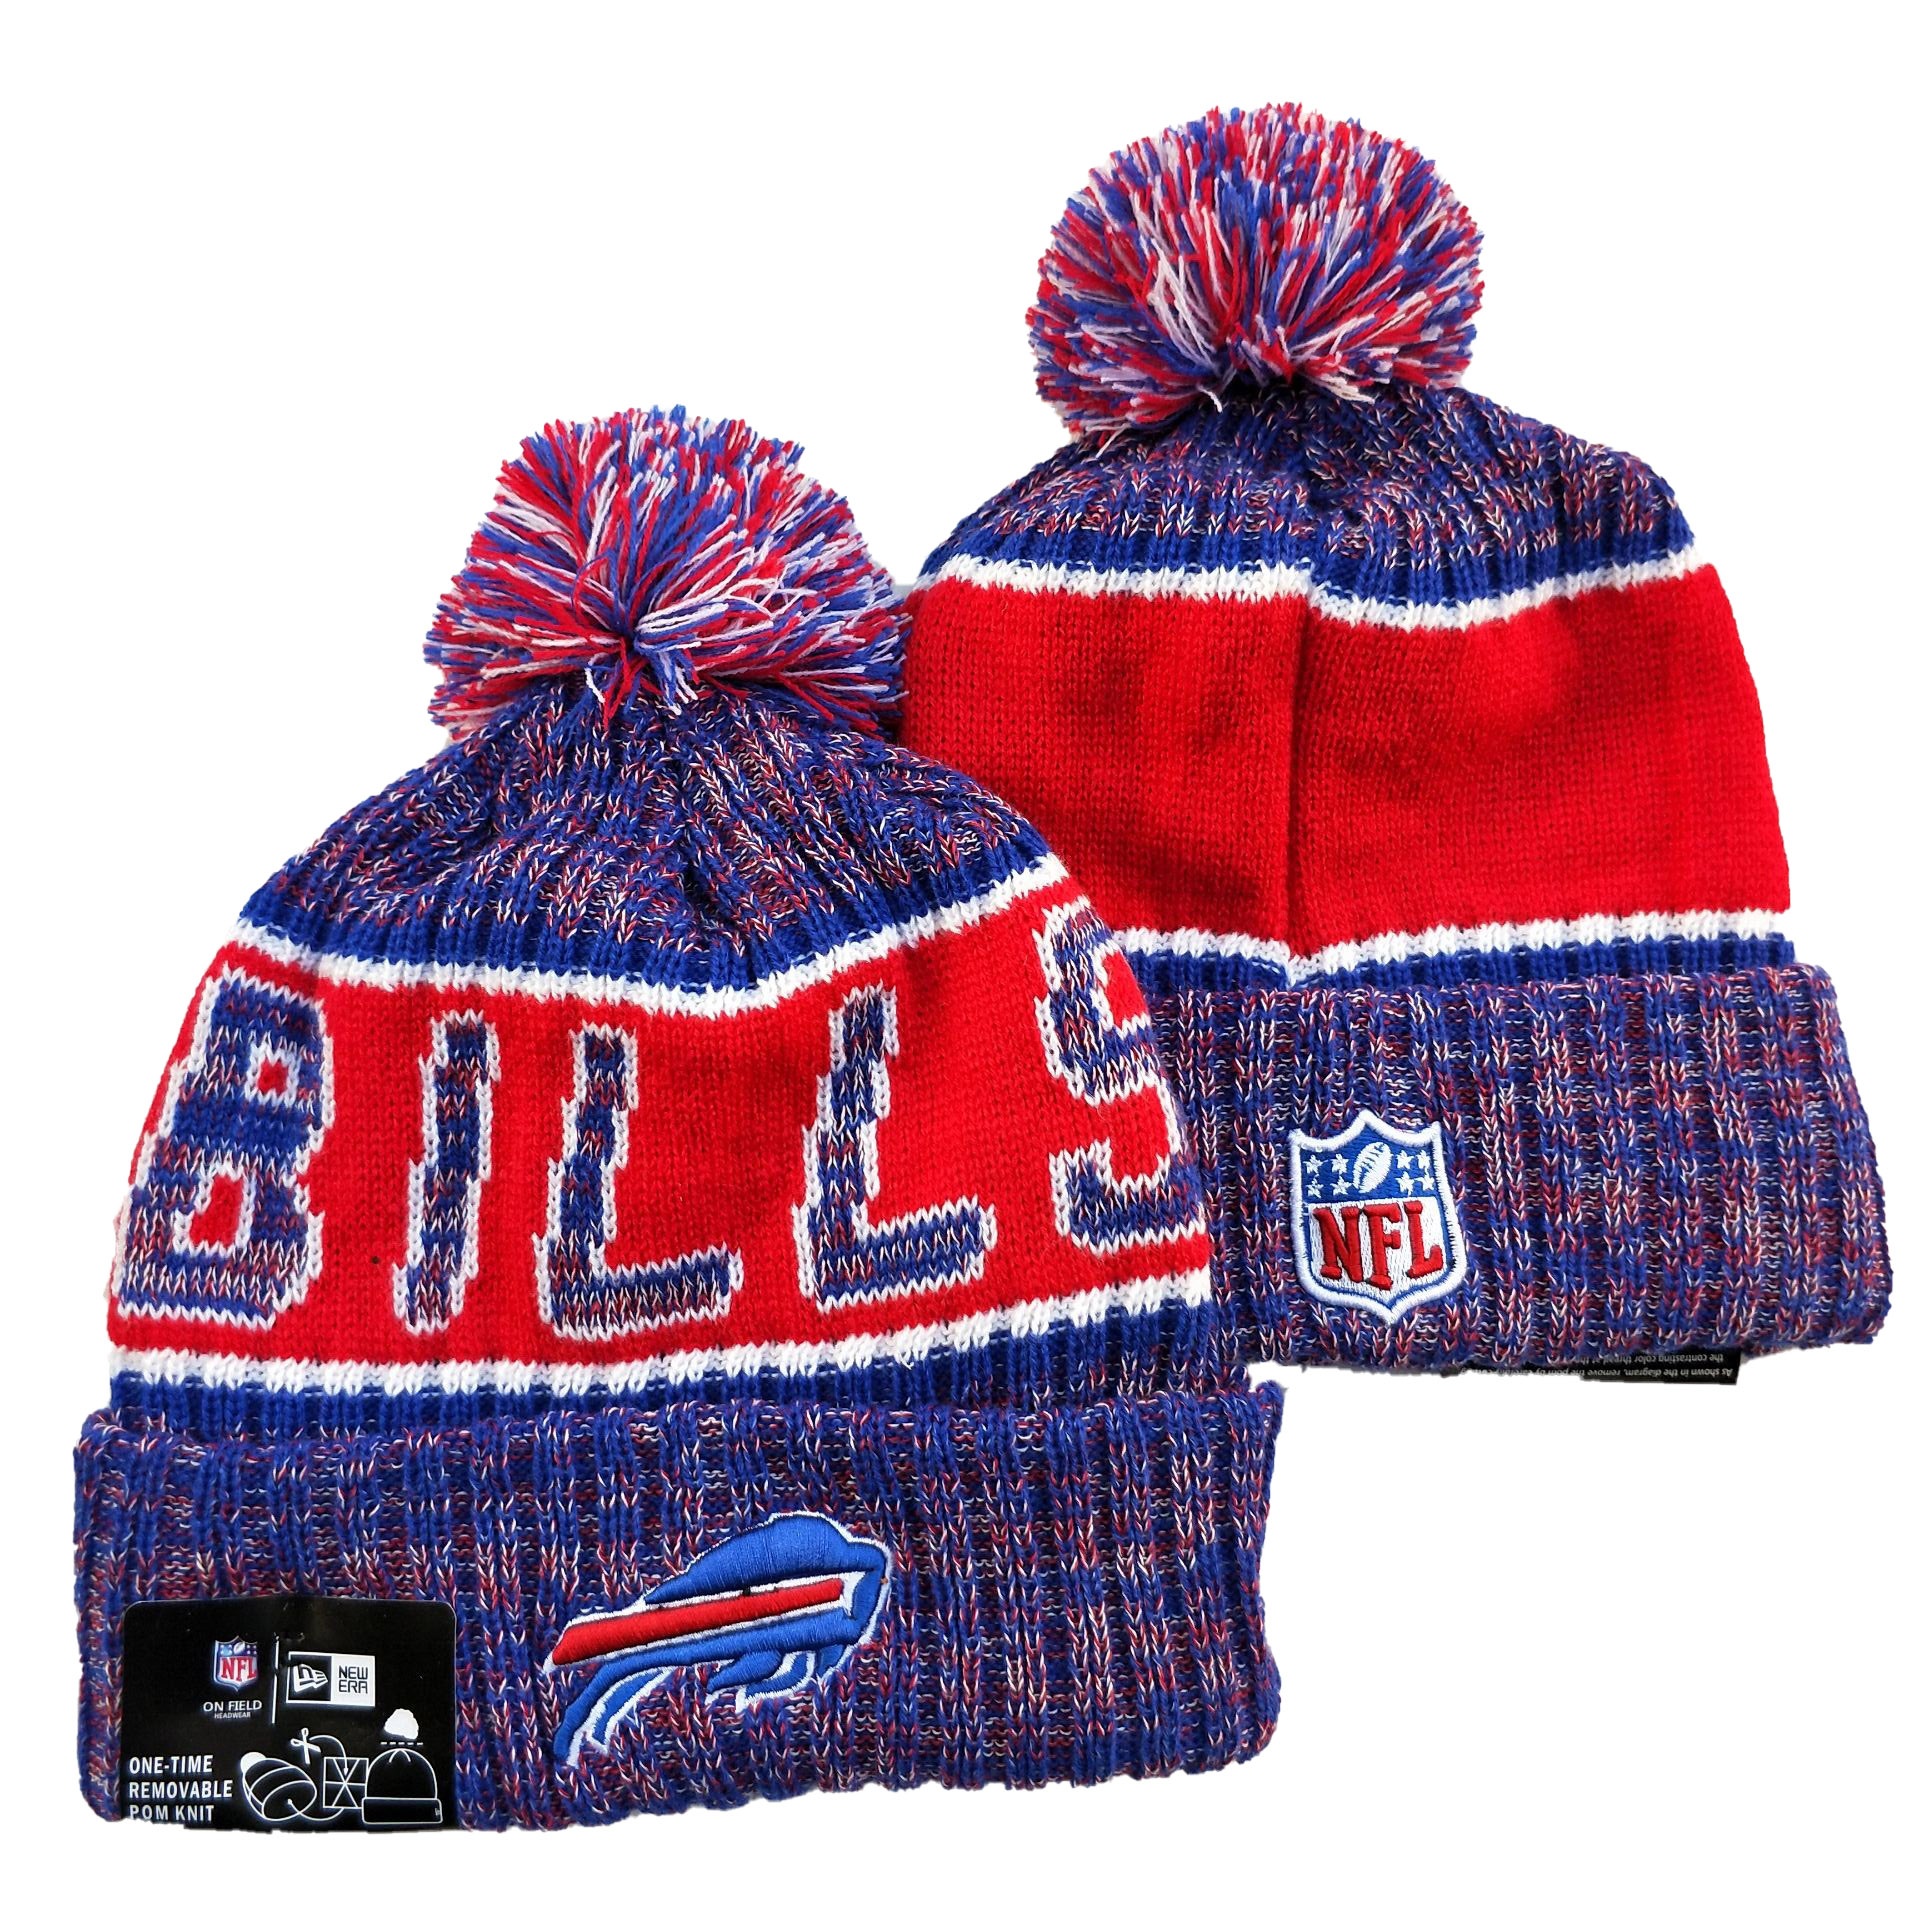 Buffalo Bills Knit Hats 040